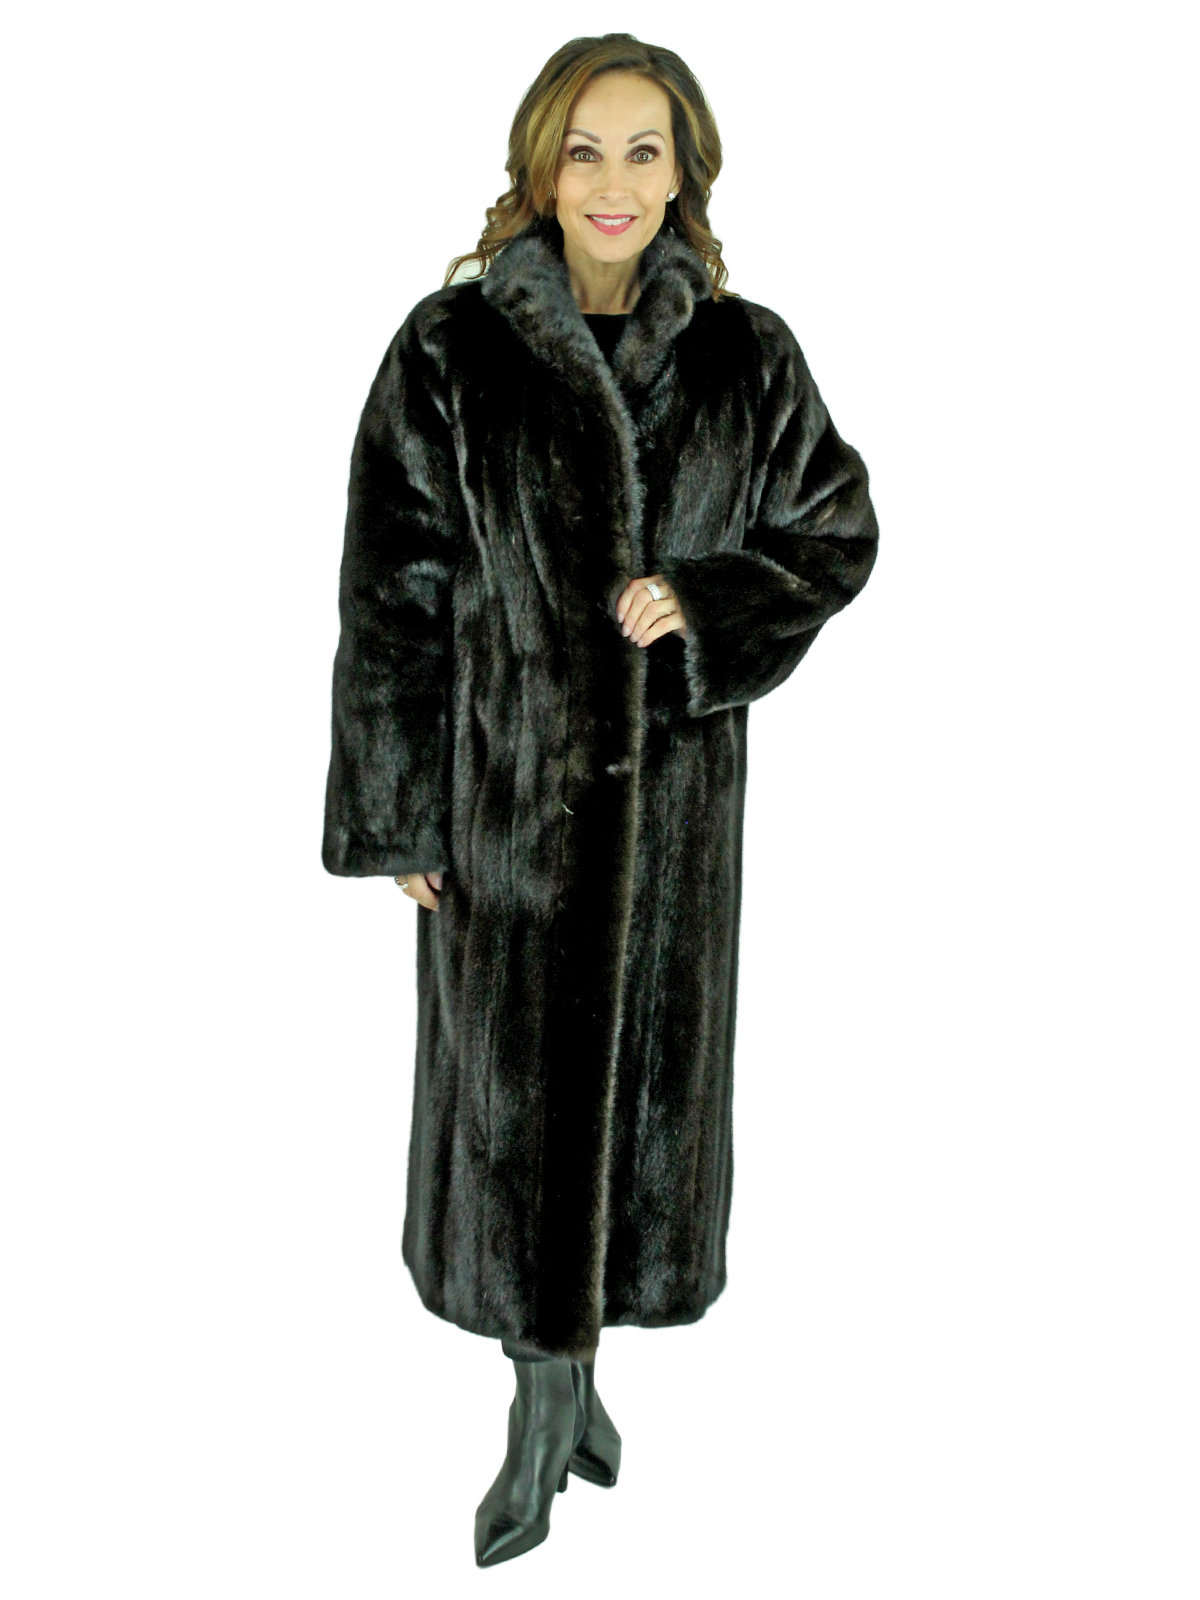 Woman's Blackglama Ranch Mink Fur Coat